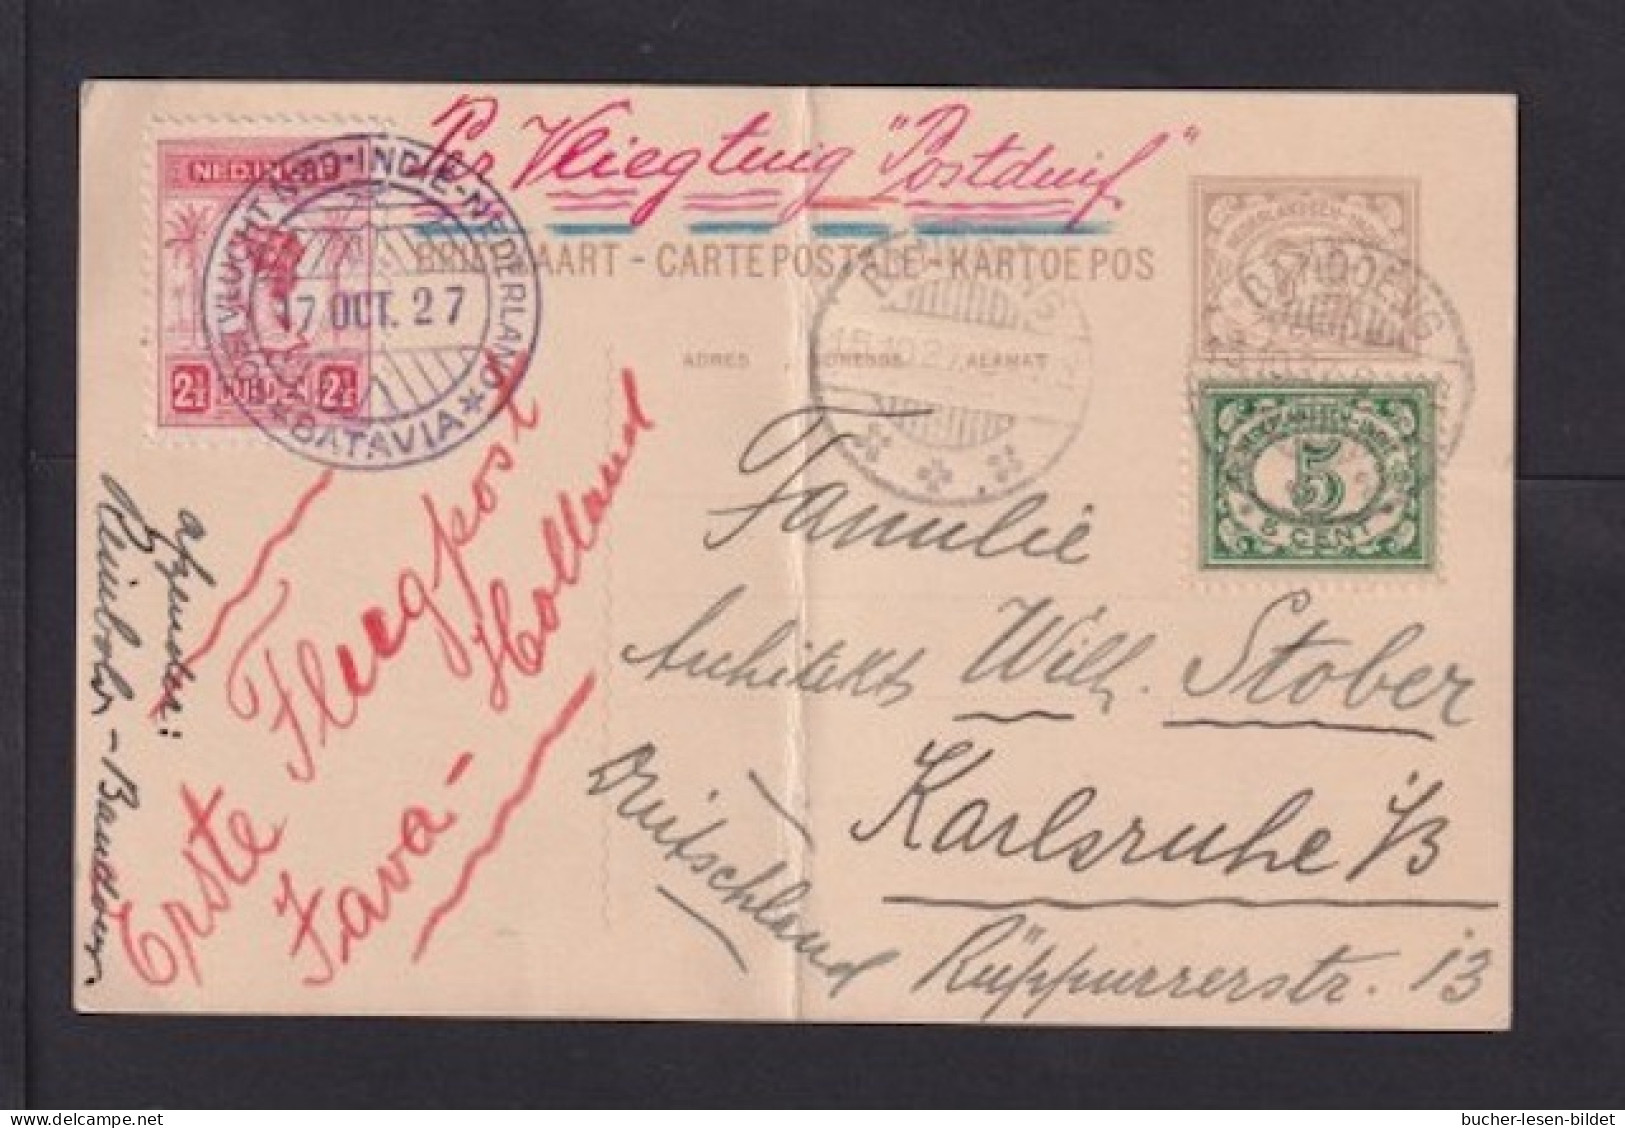 1927 - 2 1/2 Gld. Auf Ganzsache Per Flugpost Ab Bandoeng Nach Deutschland - Netherlands Indies